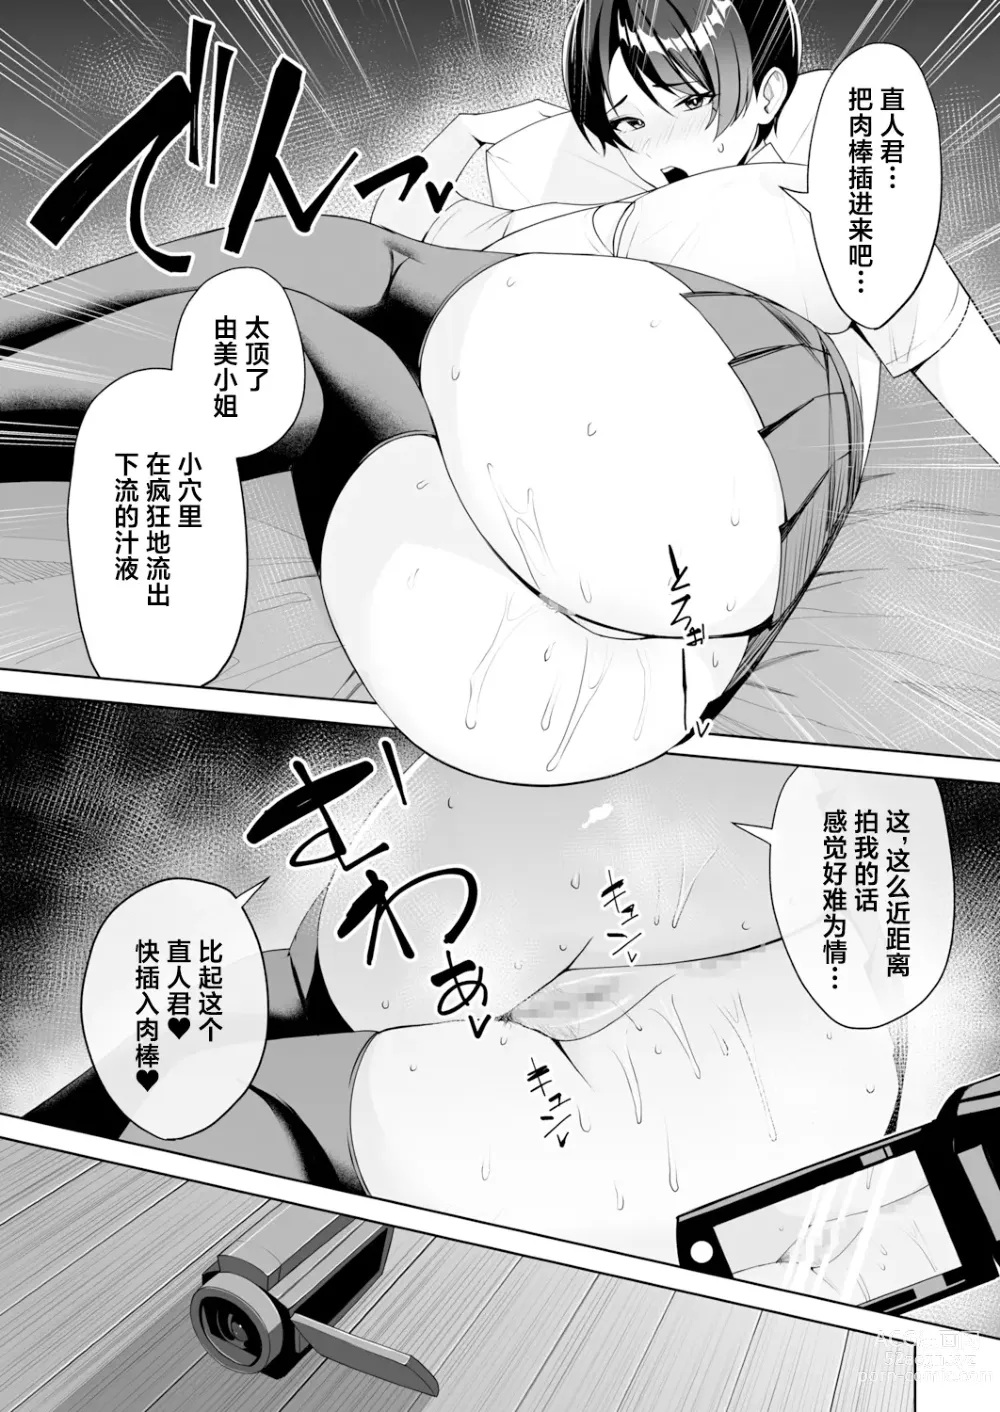 Page 155 of manga Gibo-san wa boku no mono 1-6